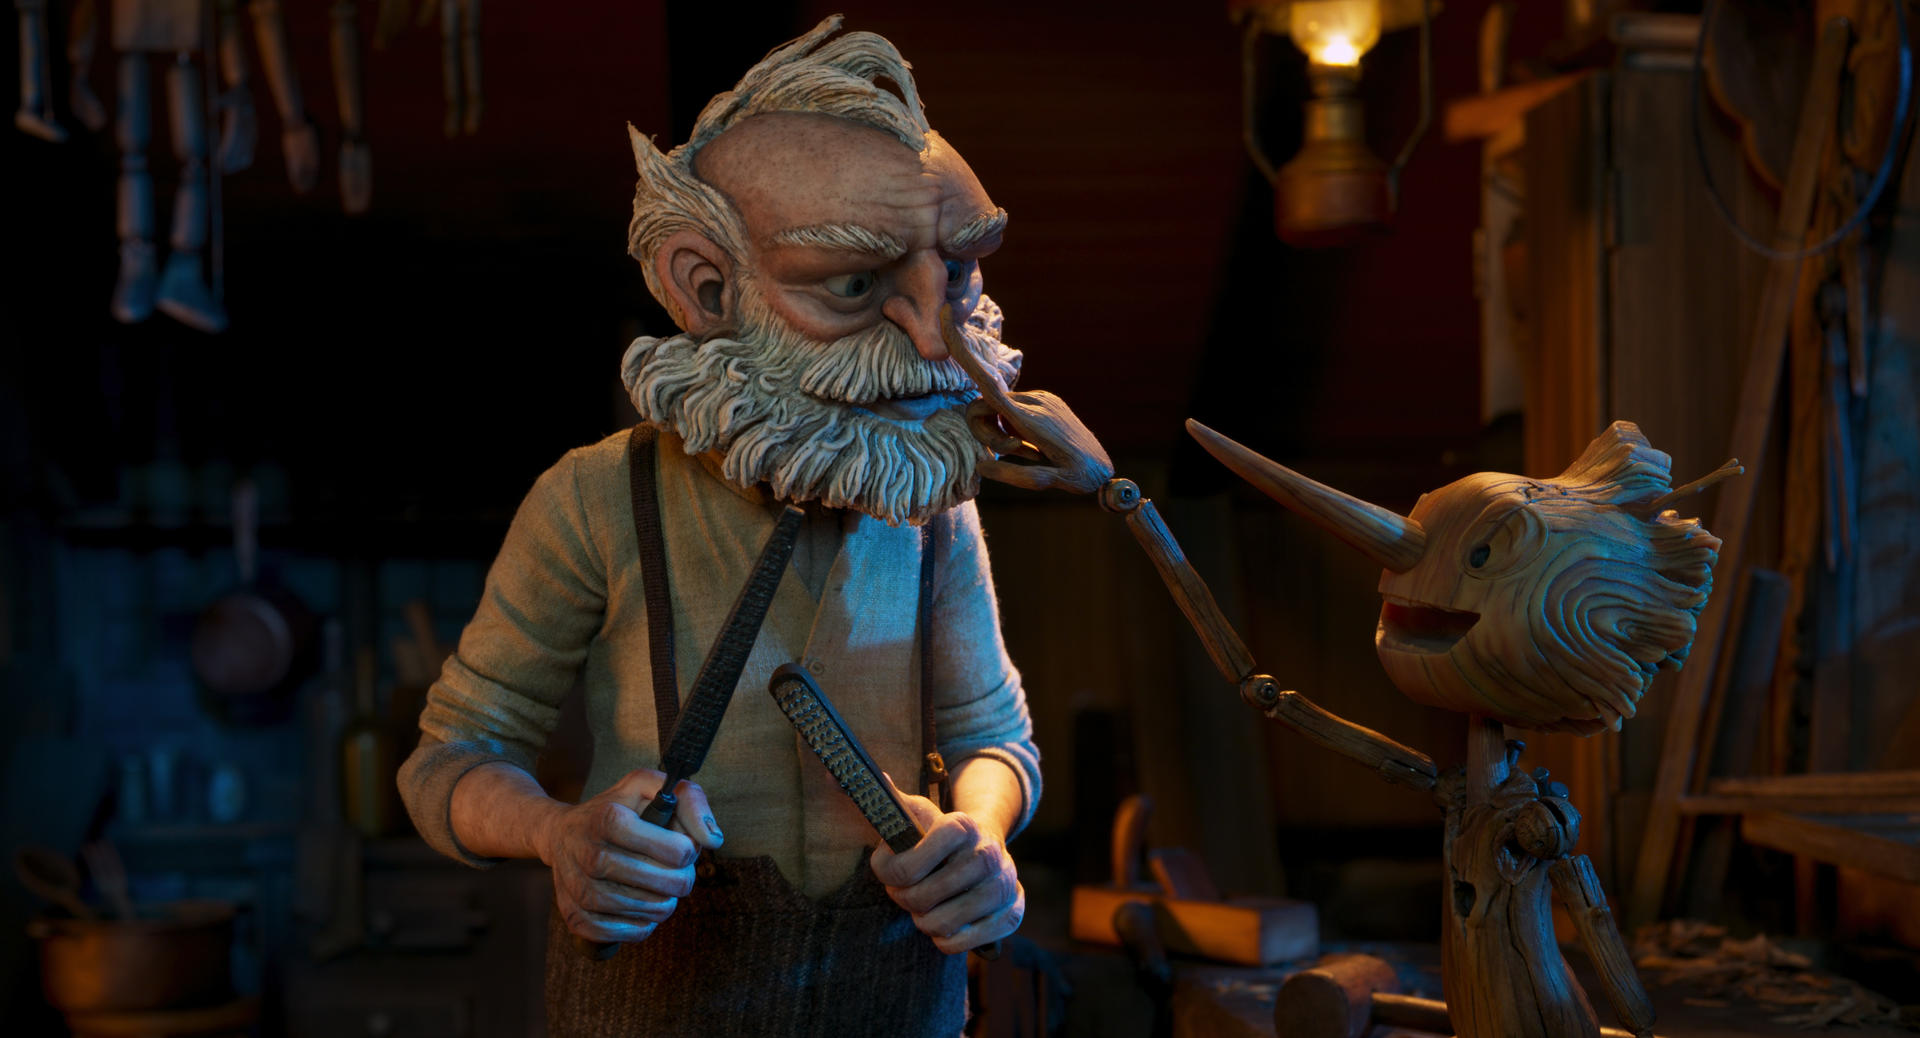 Revelan primeras imágenes de la cinta "Pinocho" de Guillermo del Toro